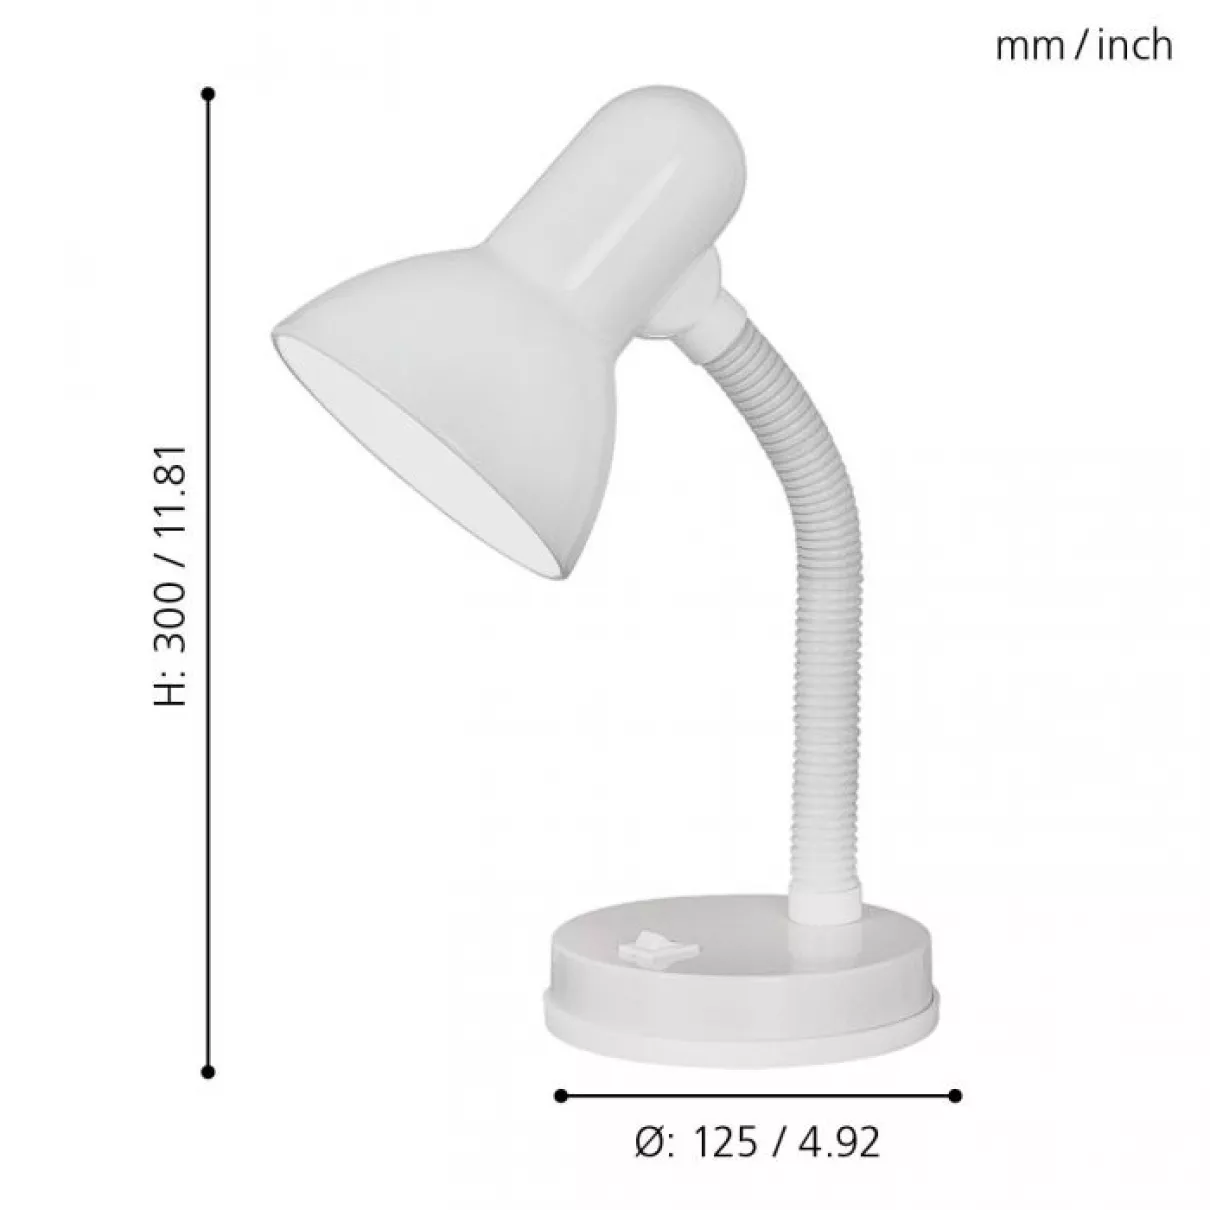 Basic - Írósztali lámpa 1x60W E27 hajlítható mag:30cm fehér - EGLO-9229